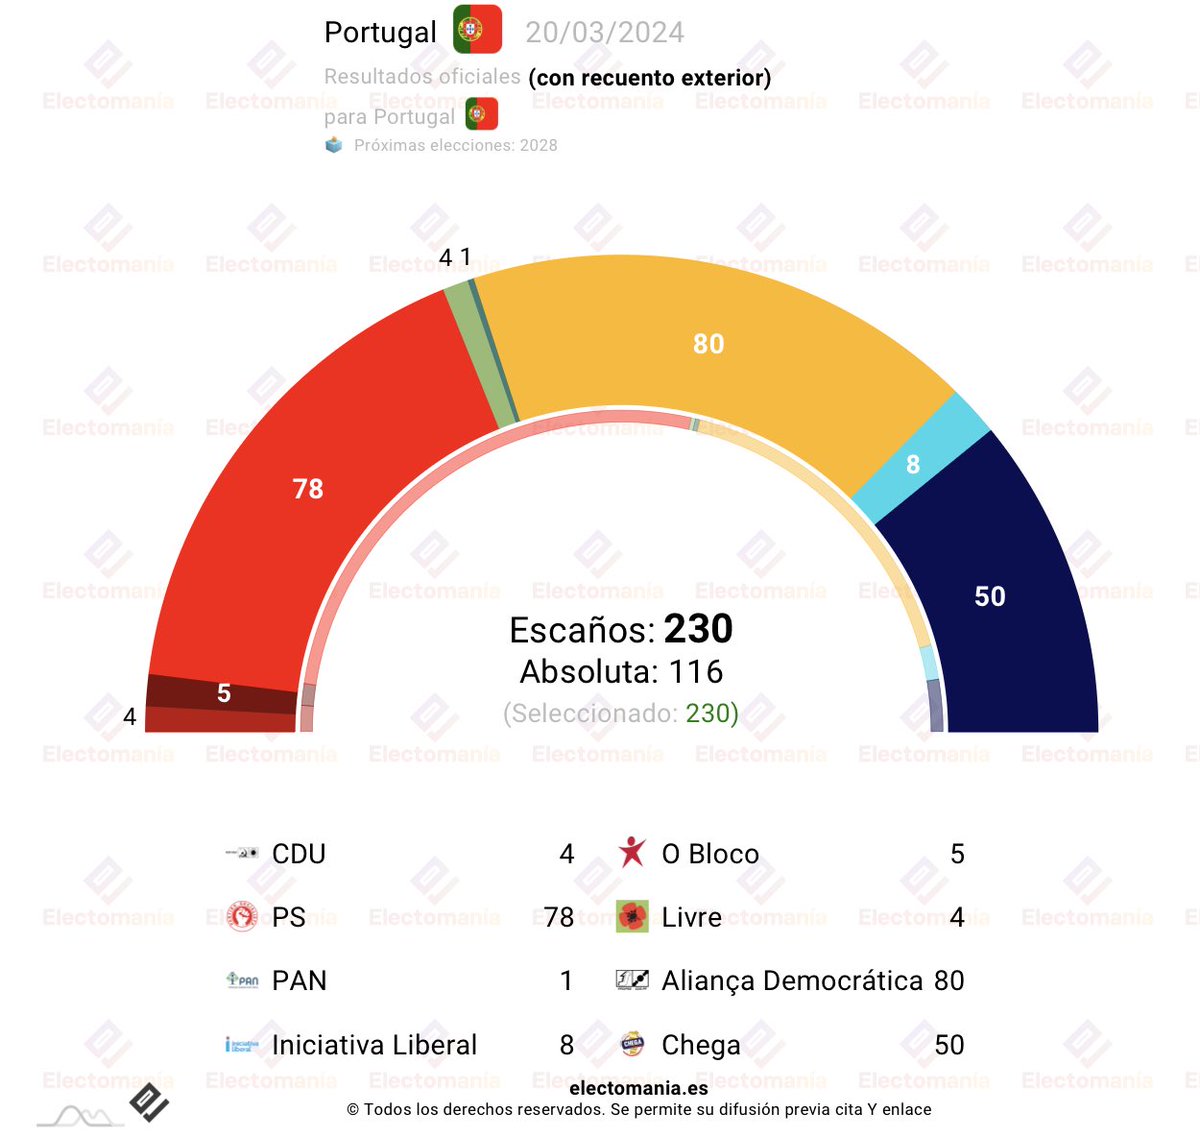 #Portugal 🇵🇹: Luís Montenegro comunica al Presidente que cuenta con una mayoría 🧮 para gobernar. Contaría con el apoyo de los 88 diputados que suman AD 🟠 (CDS-PP + PSD) y de Iniciativa Liberal ℹ️. Se sobreentiende un apoyo de Chega ⚫. electomania.es